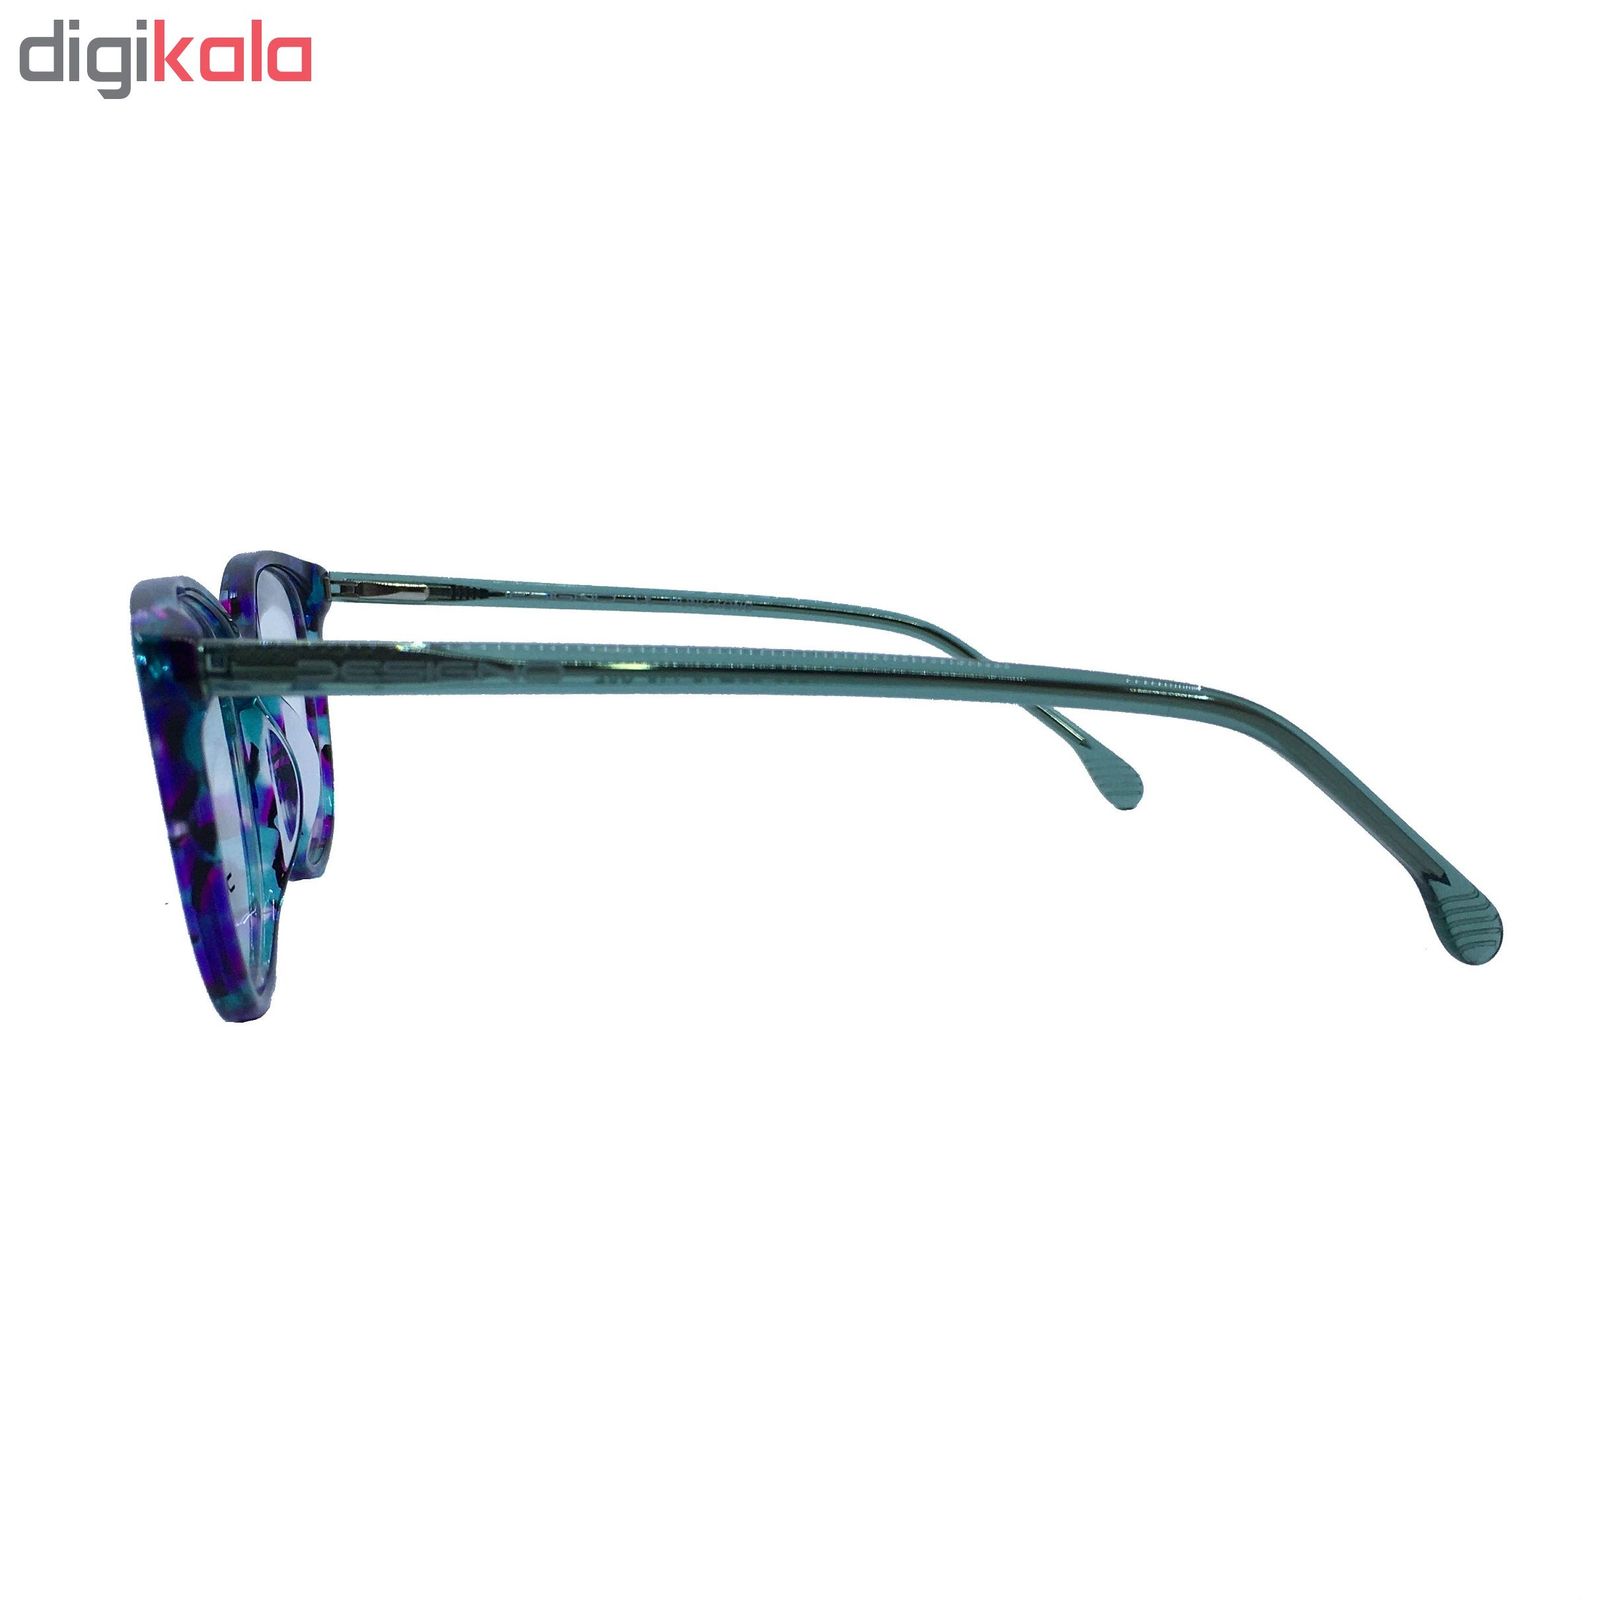 عینک طبی زنانه دیزاینو مدل DG17286 C02 -  - 3